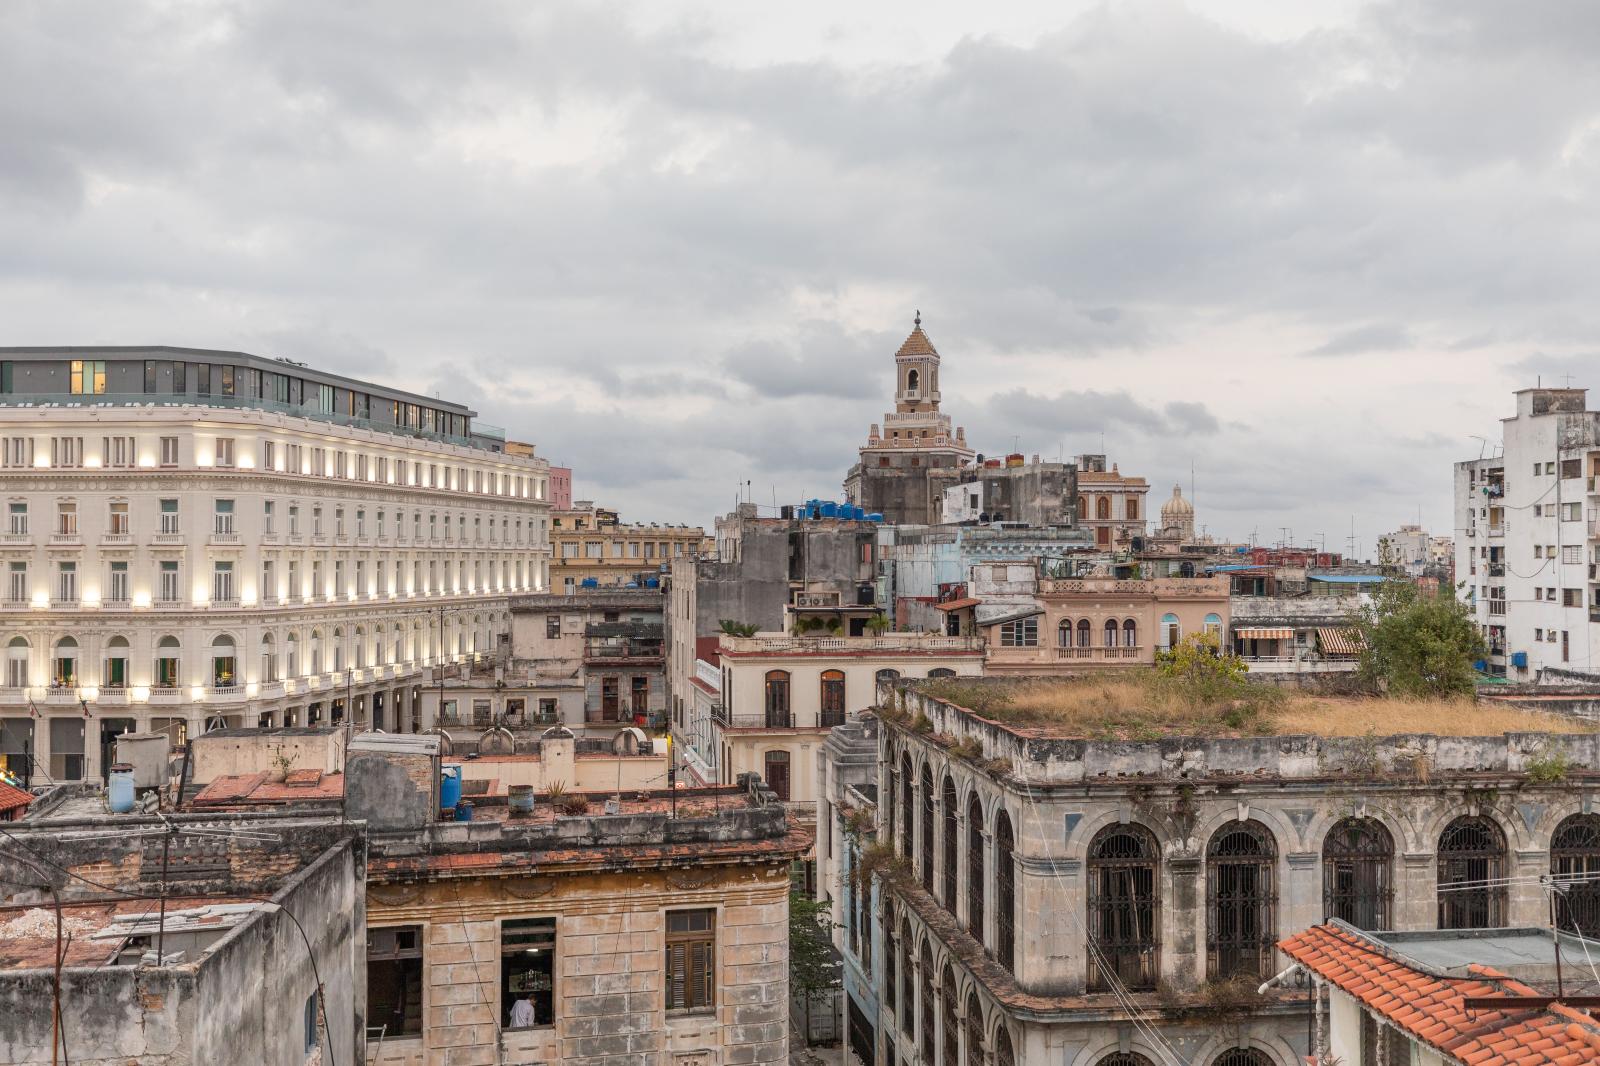 View of Old Havana